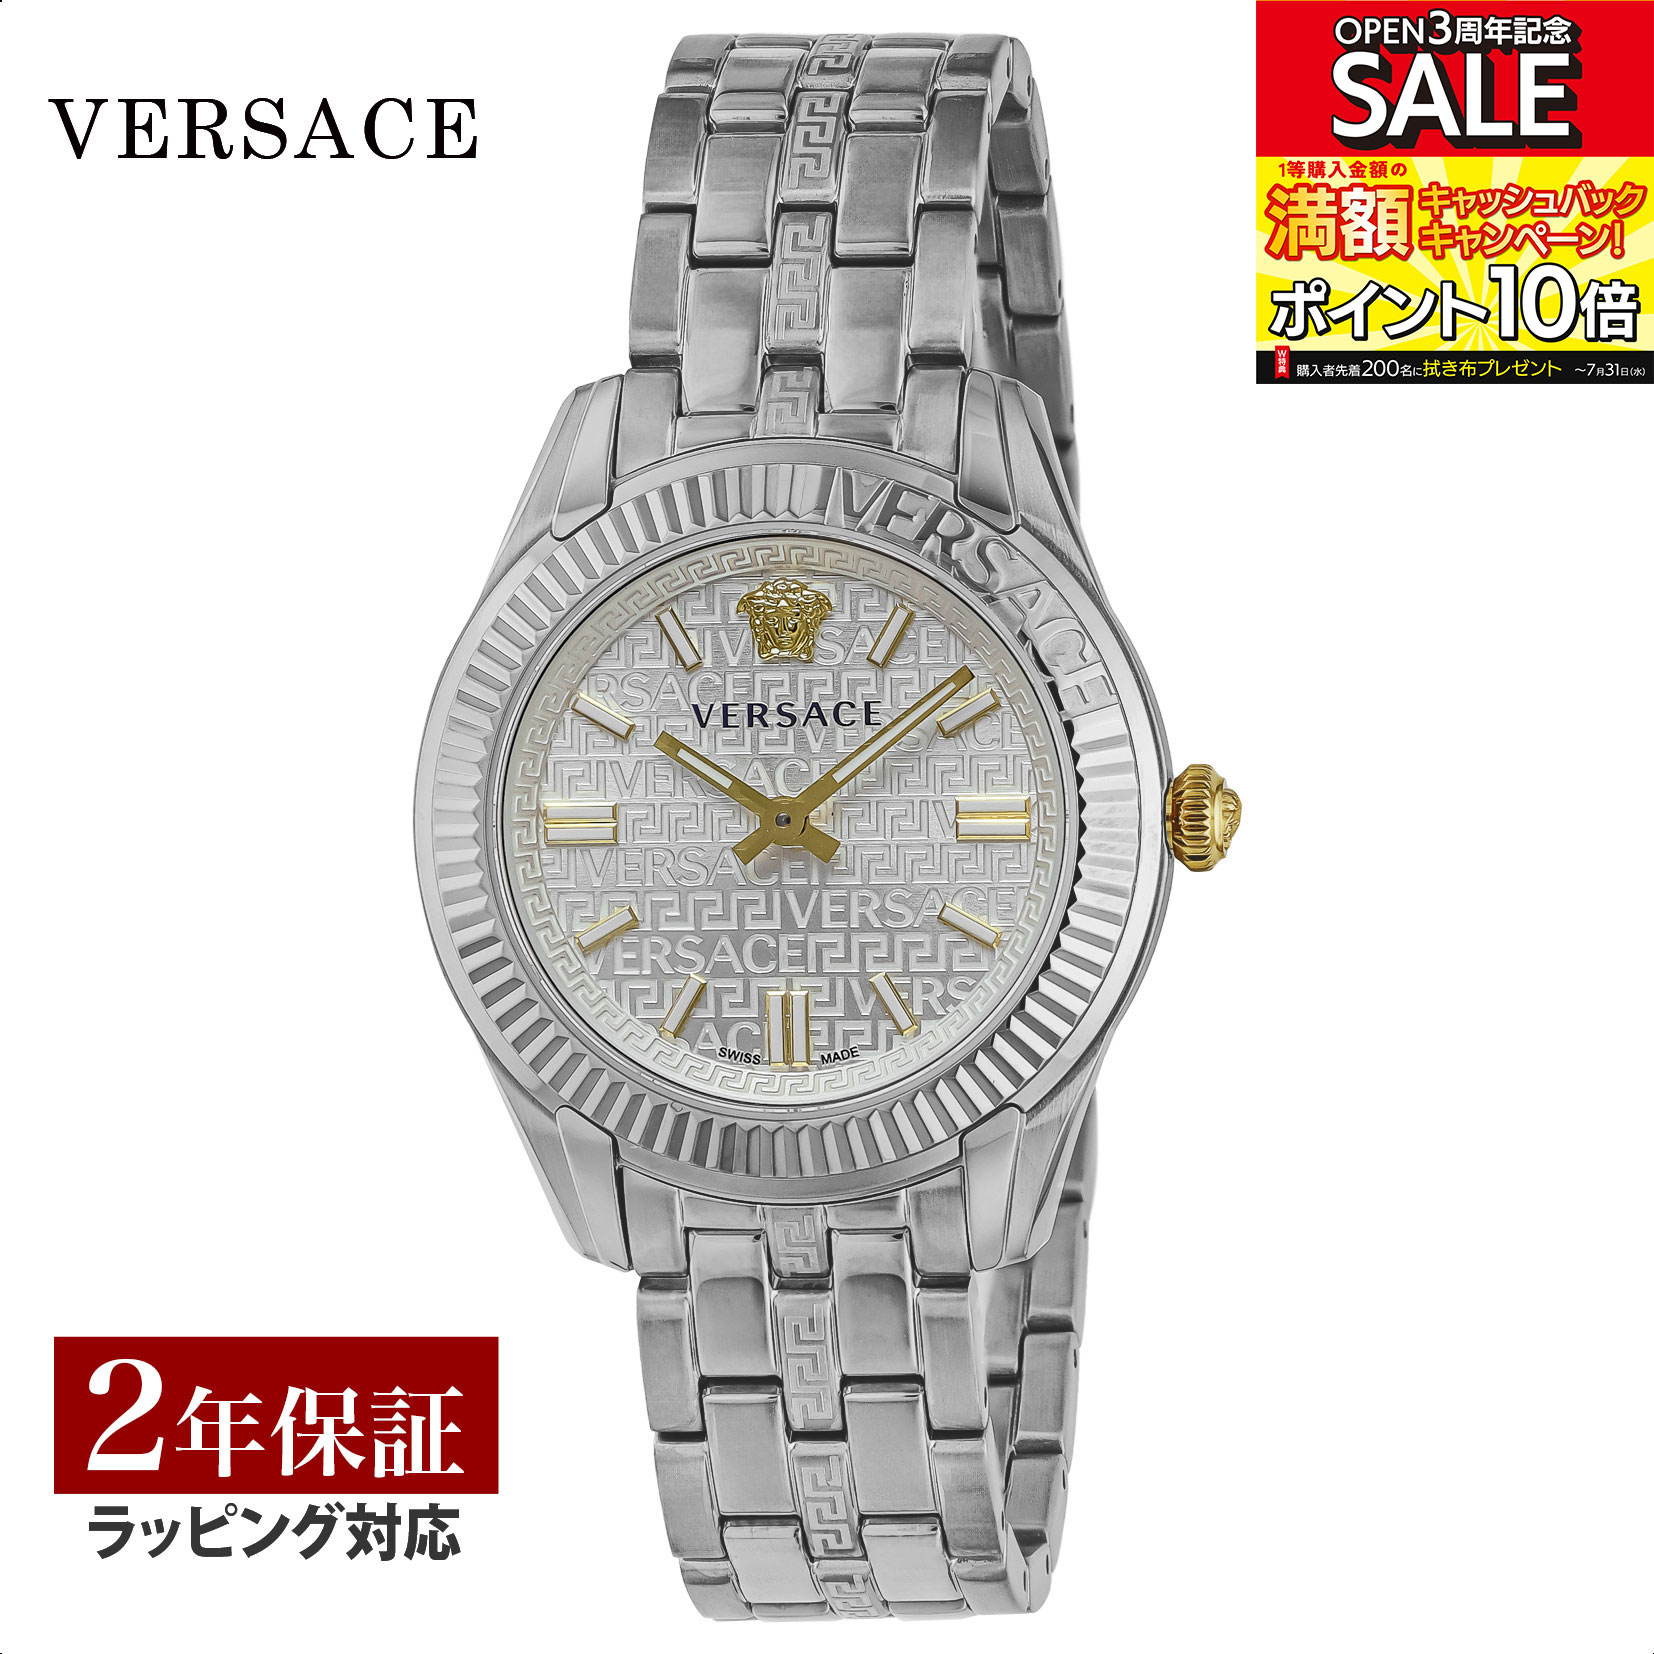 ヴェルサーチェ 腕時計（メンズ） ヴェルサーチェ VERSACE メンズ 時計 グレカ タイム Greca Time クォーツ シルバー VE6C00323 腕時計 高級腕時計 ブランド